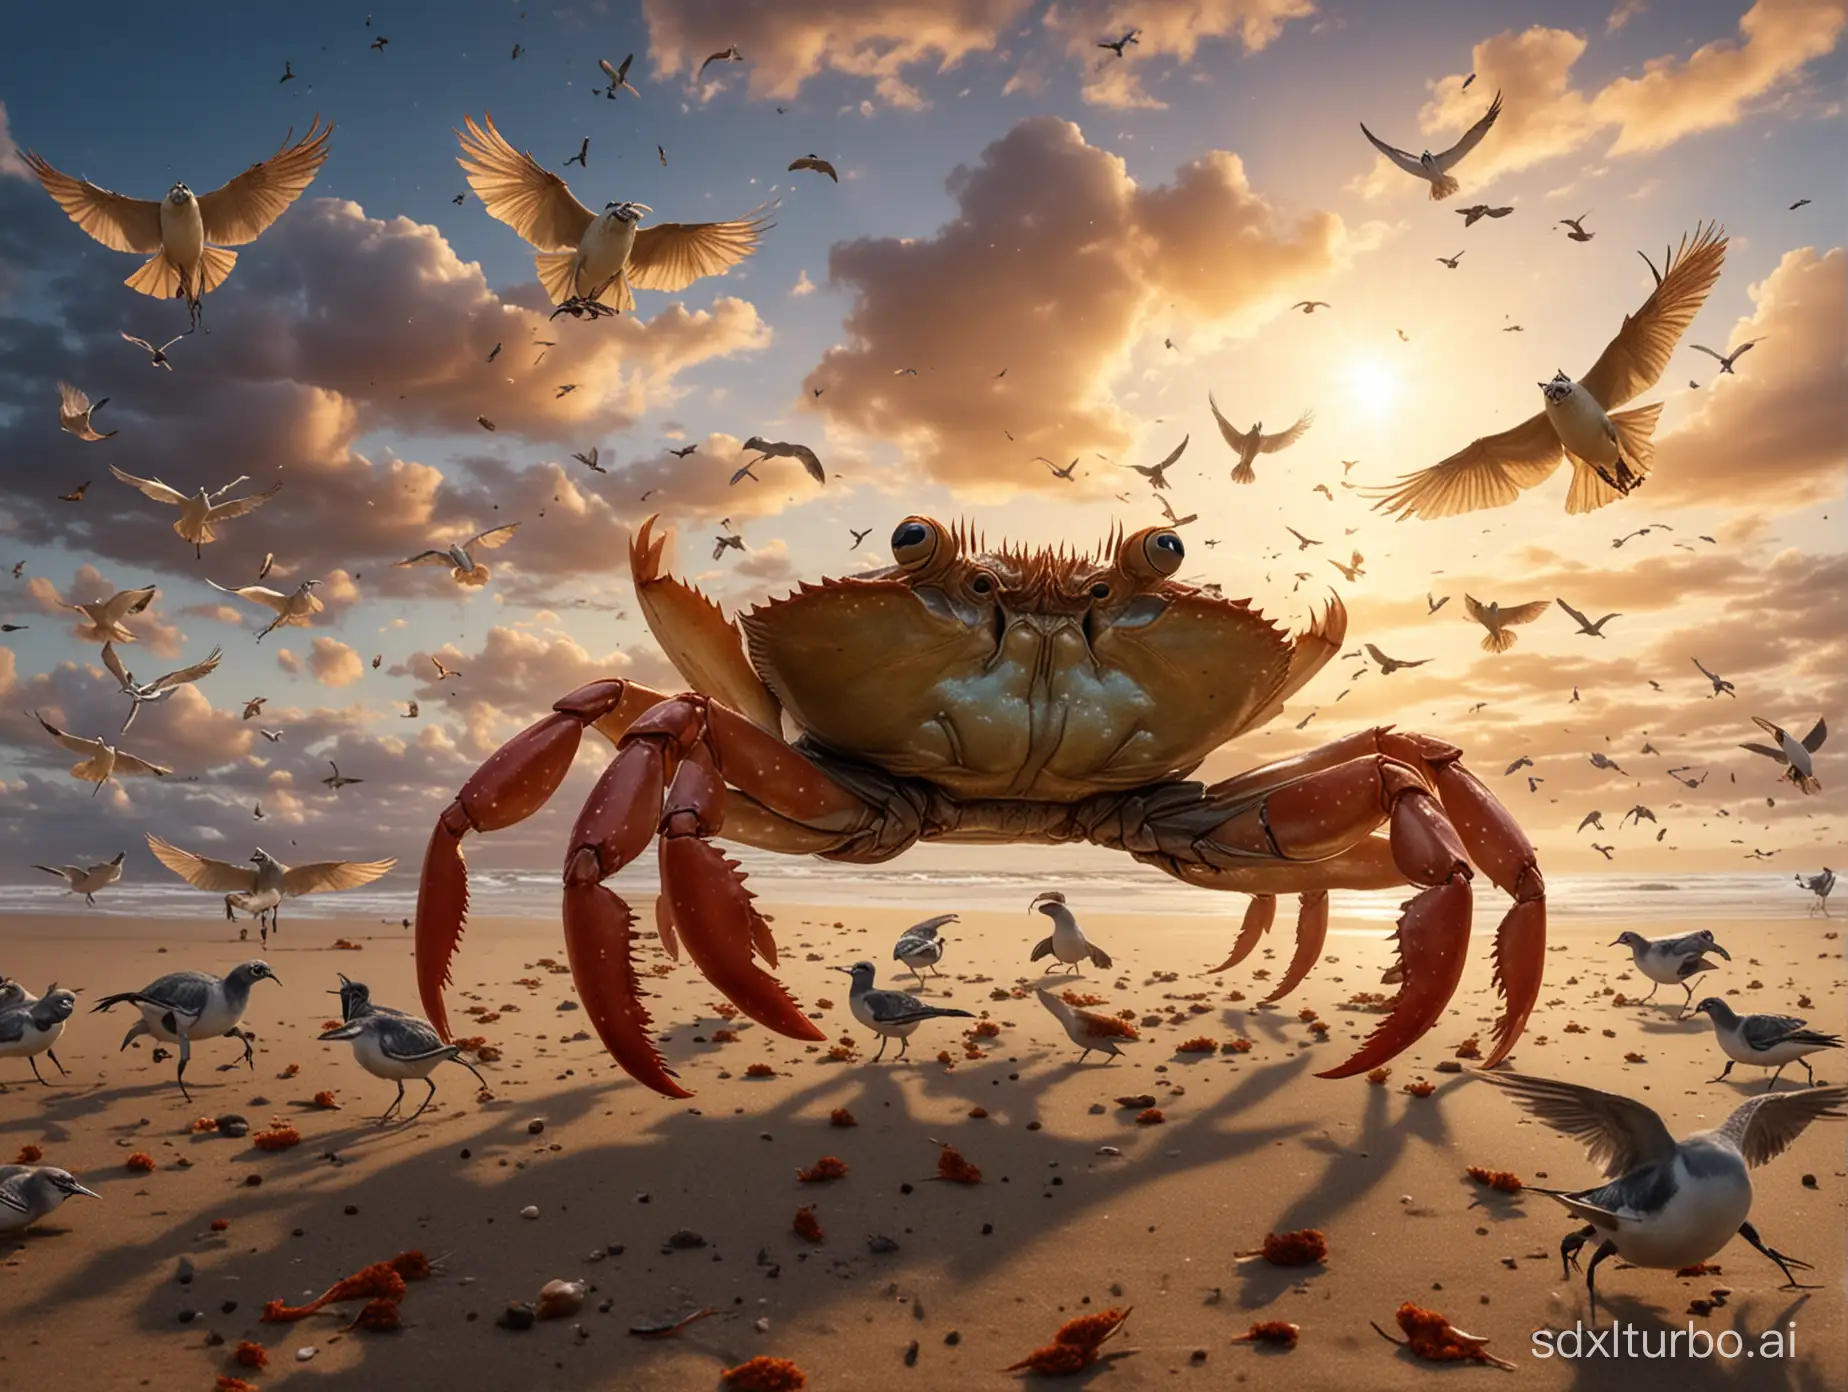 Australian-Emperor-Crab-Dancing-Amidst-Flying-Birds